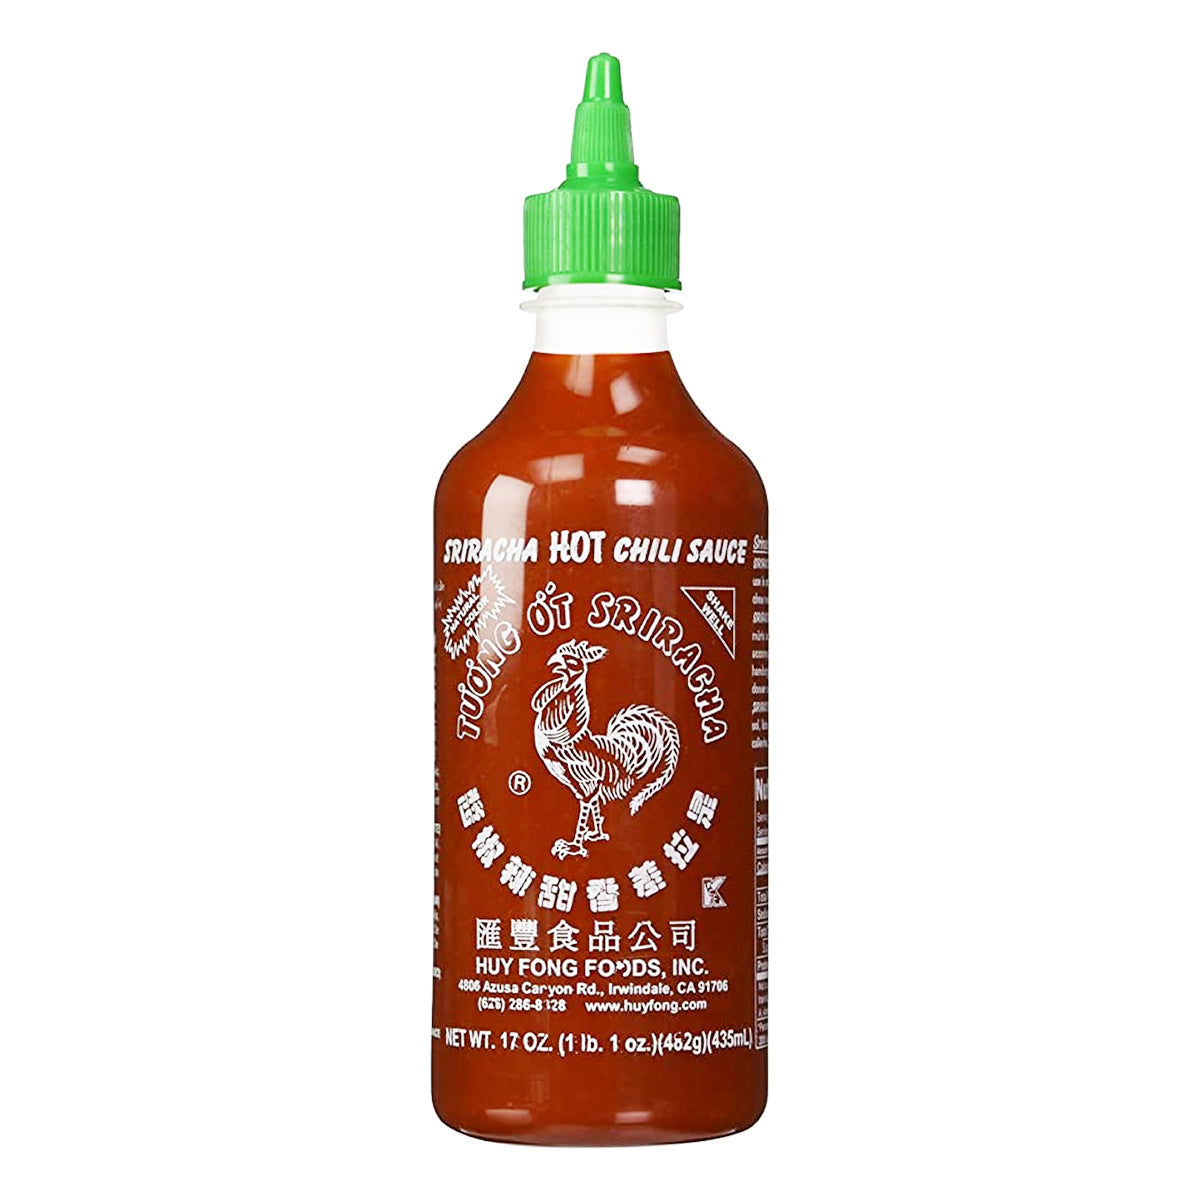 huy fong foods sriracha chili hot sauce - 17oz